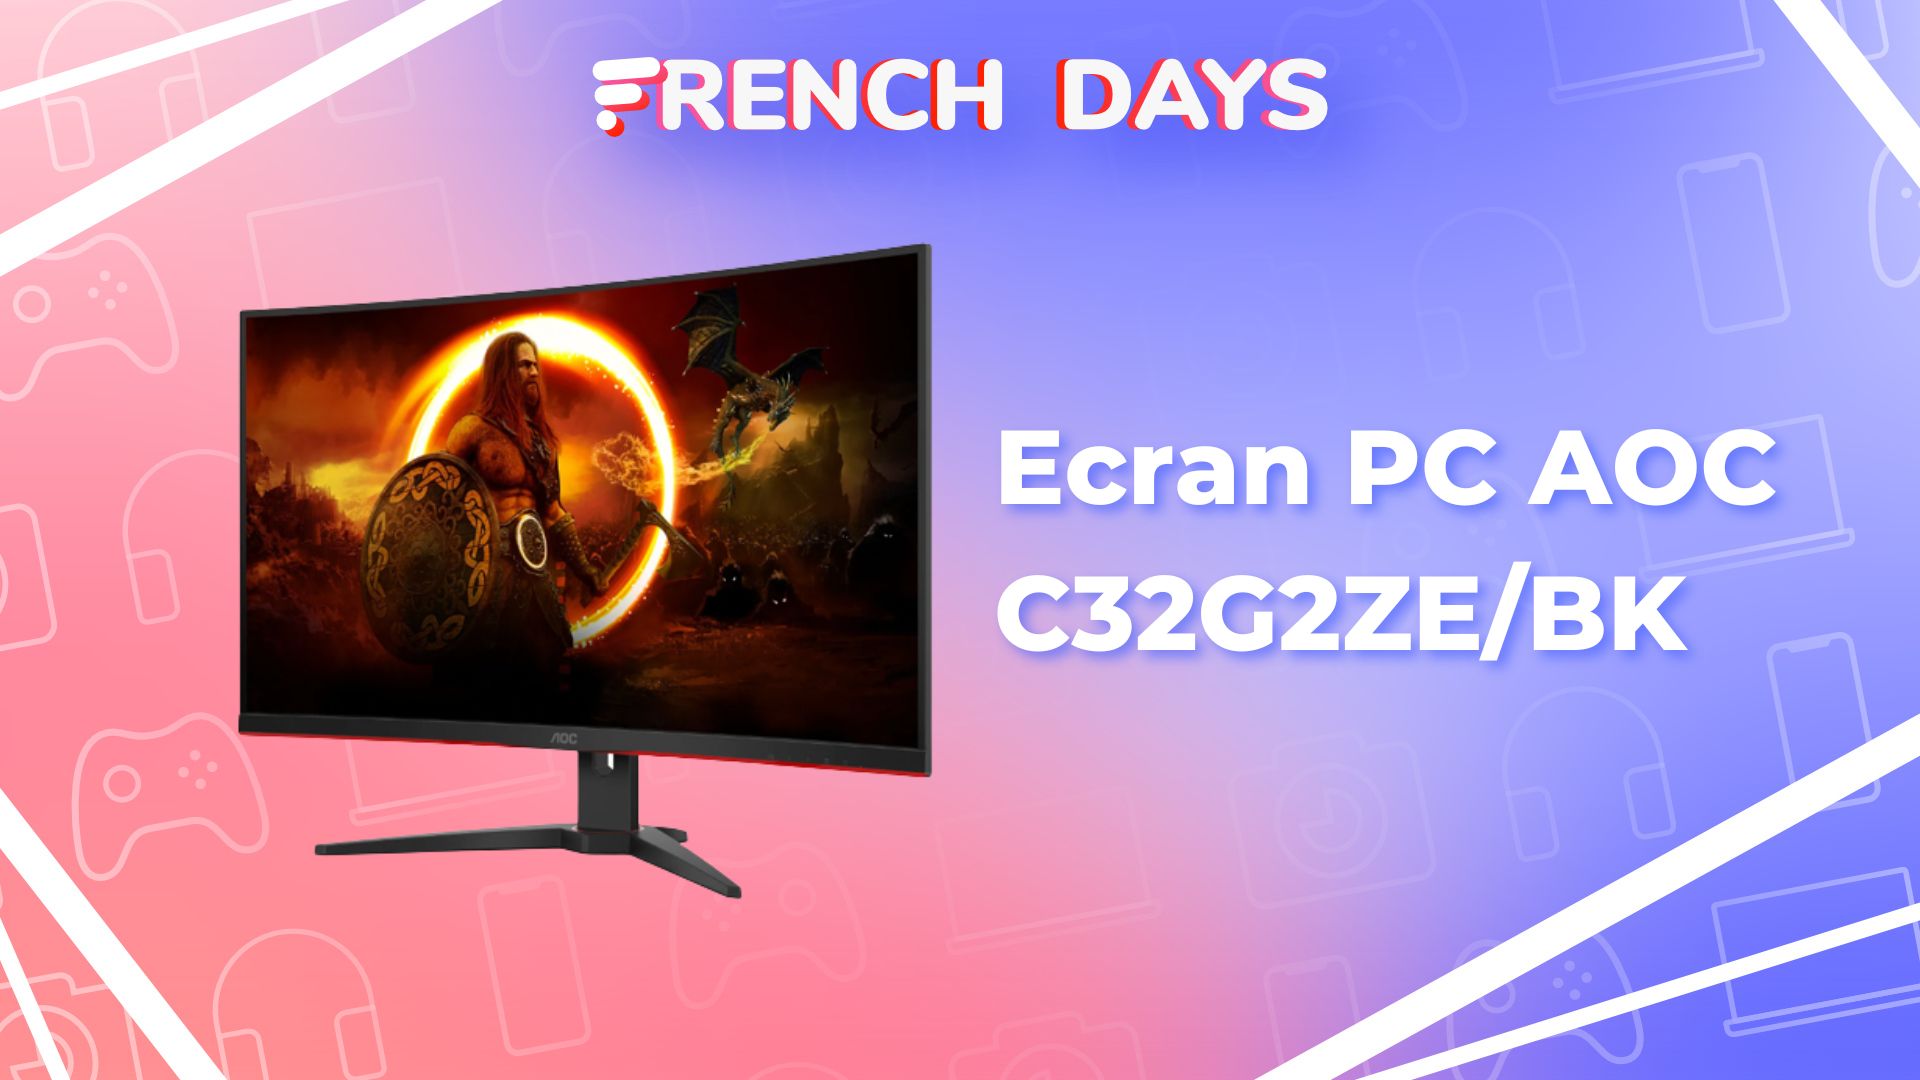 Cet écran PC gamer (31,5, 240 Hz, FreeSync) ne dépasse pas les 200 euros  lors des French Days